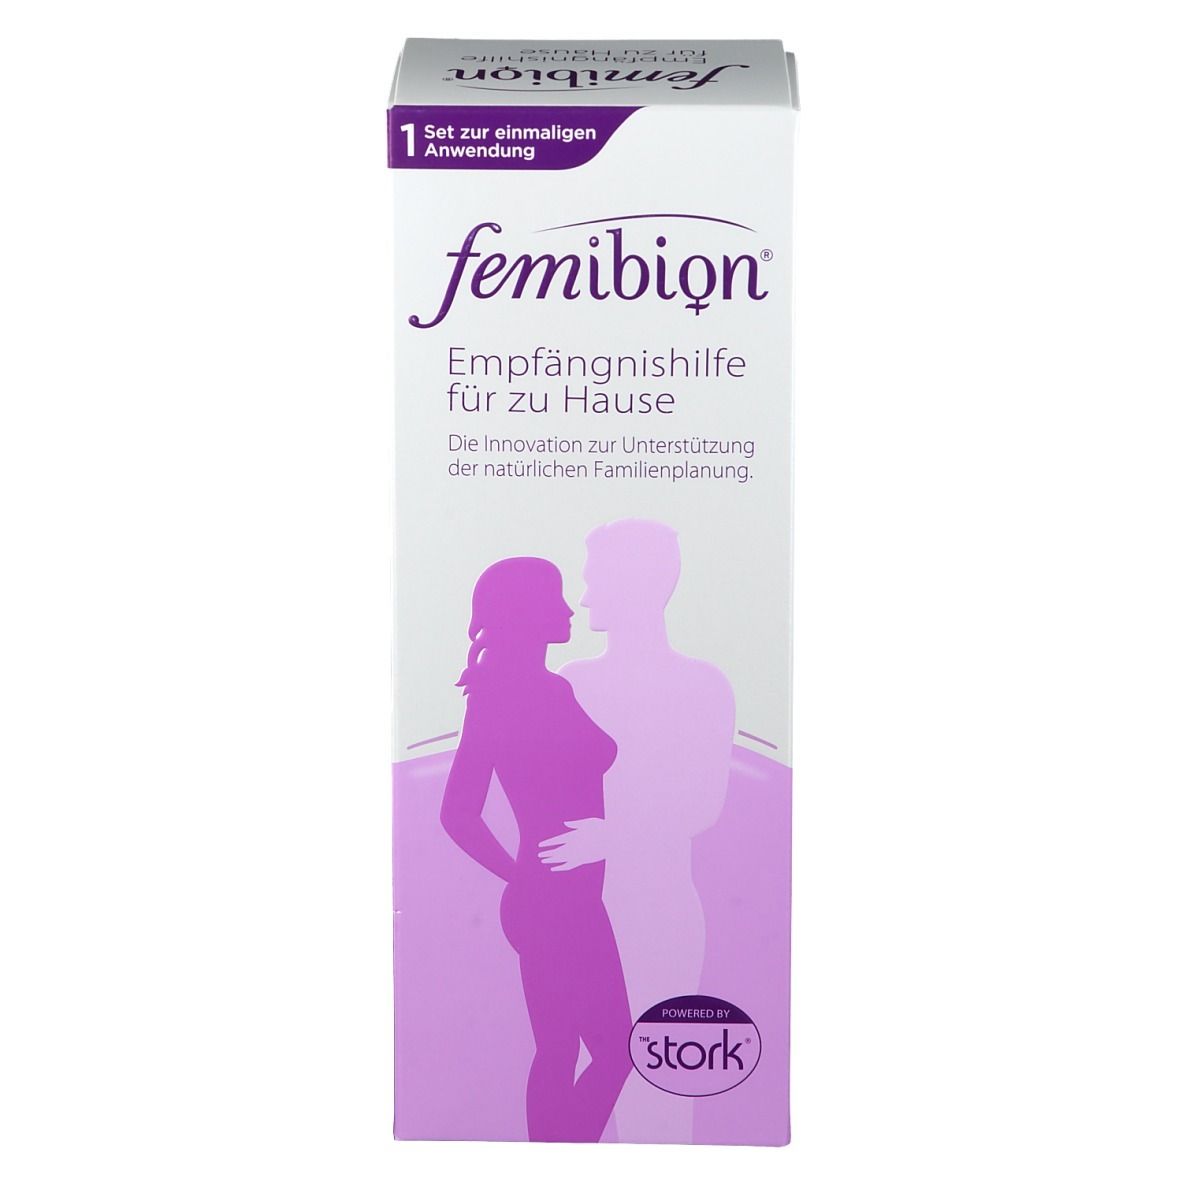 femibion® Empfängnishilfe für zu Hause